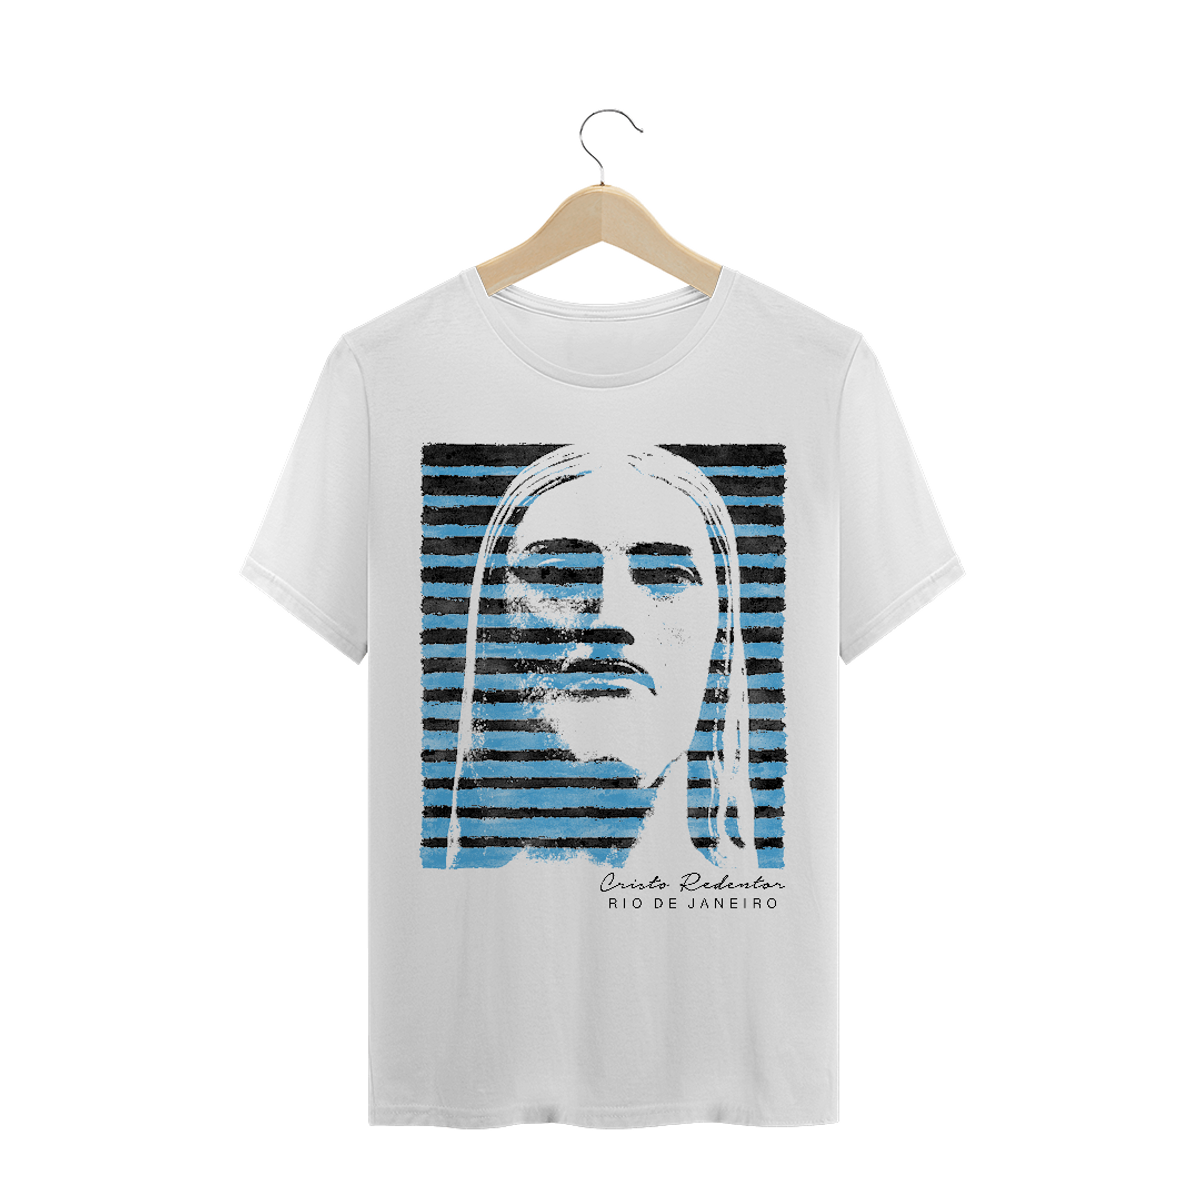 Nome do produto: Camiseta Masculina Cristo Redentor azul e preto